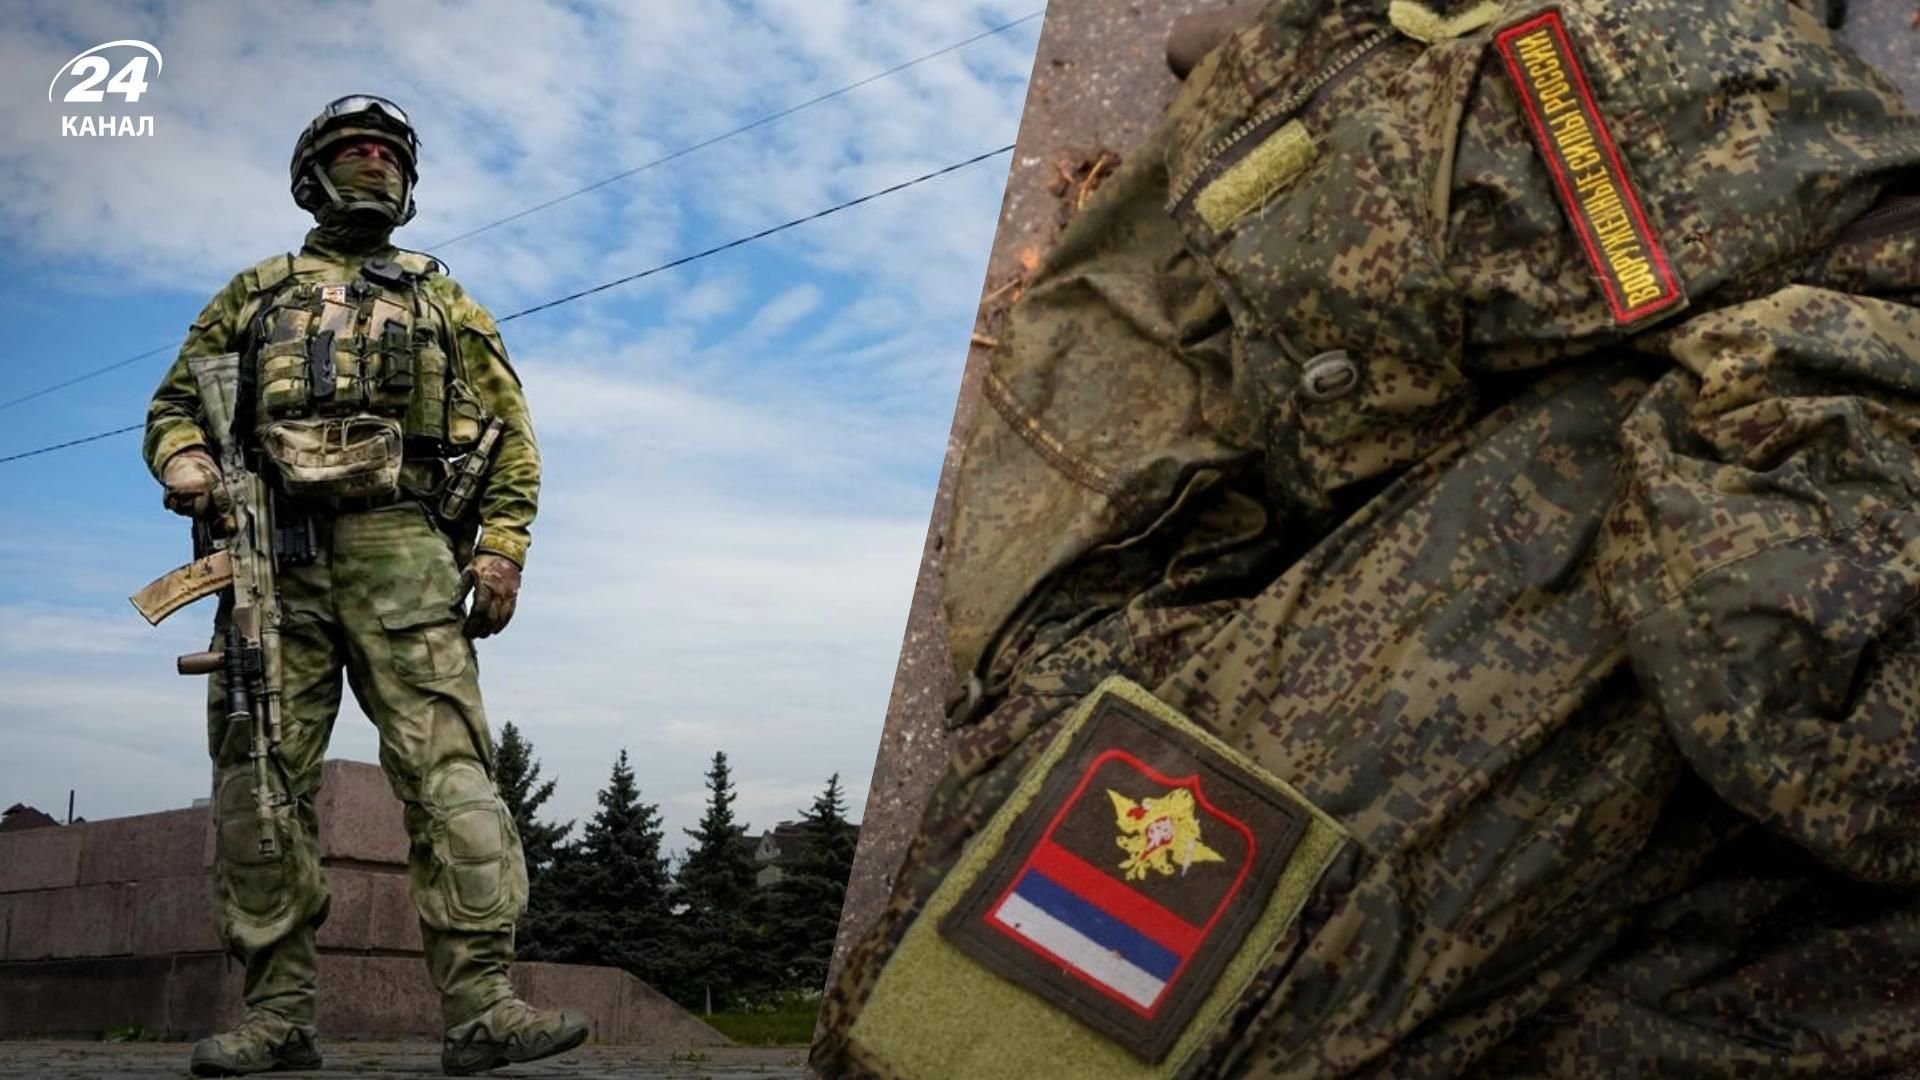 Скільки російських військових на території Білорусі - пояснення ГУР МО